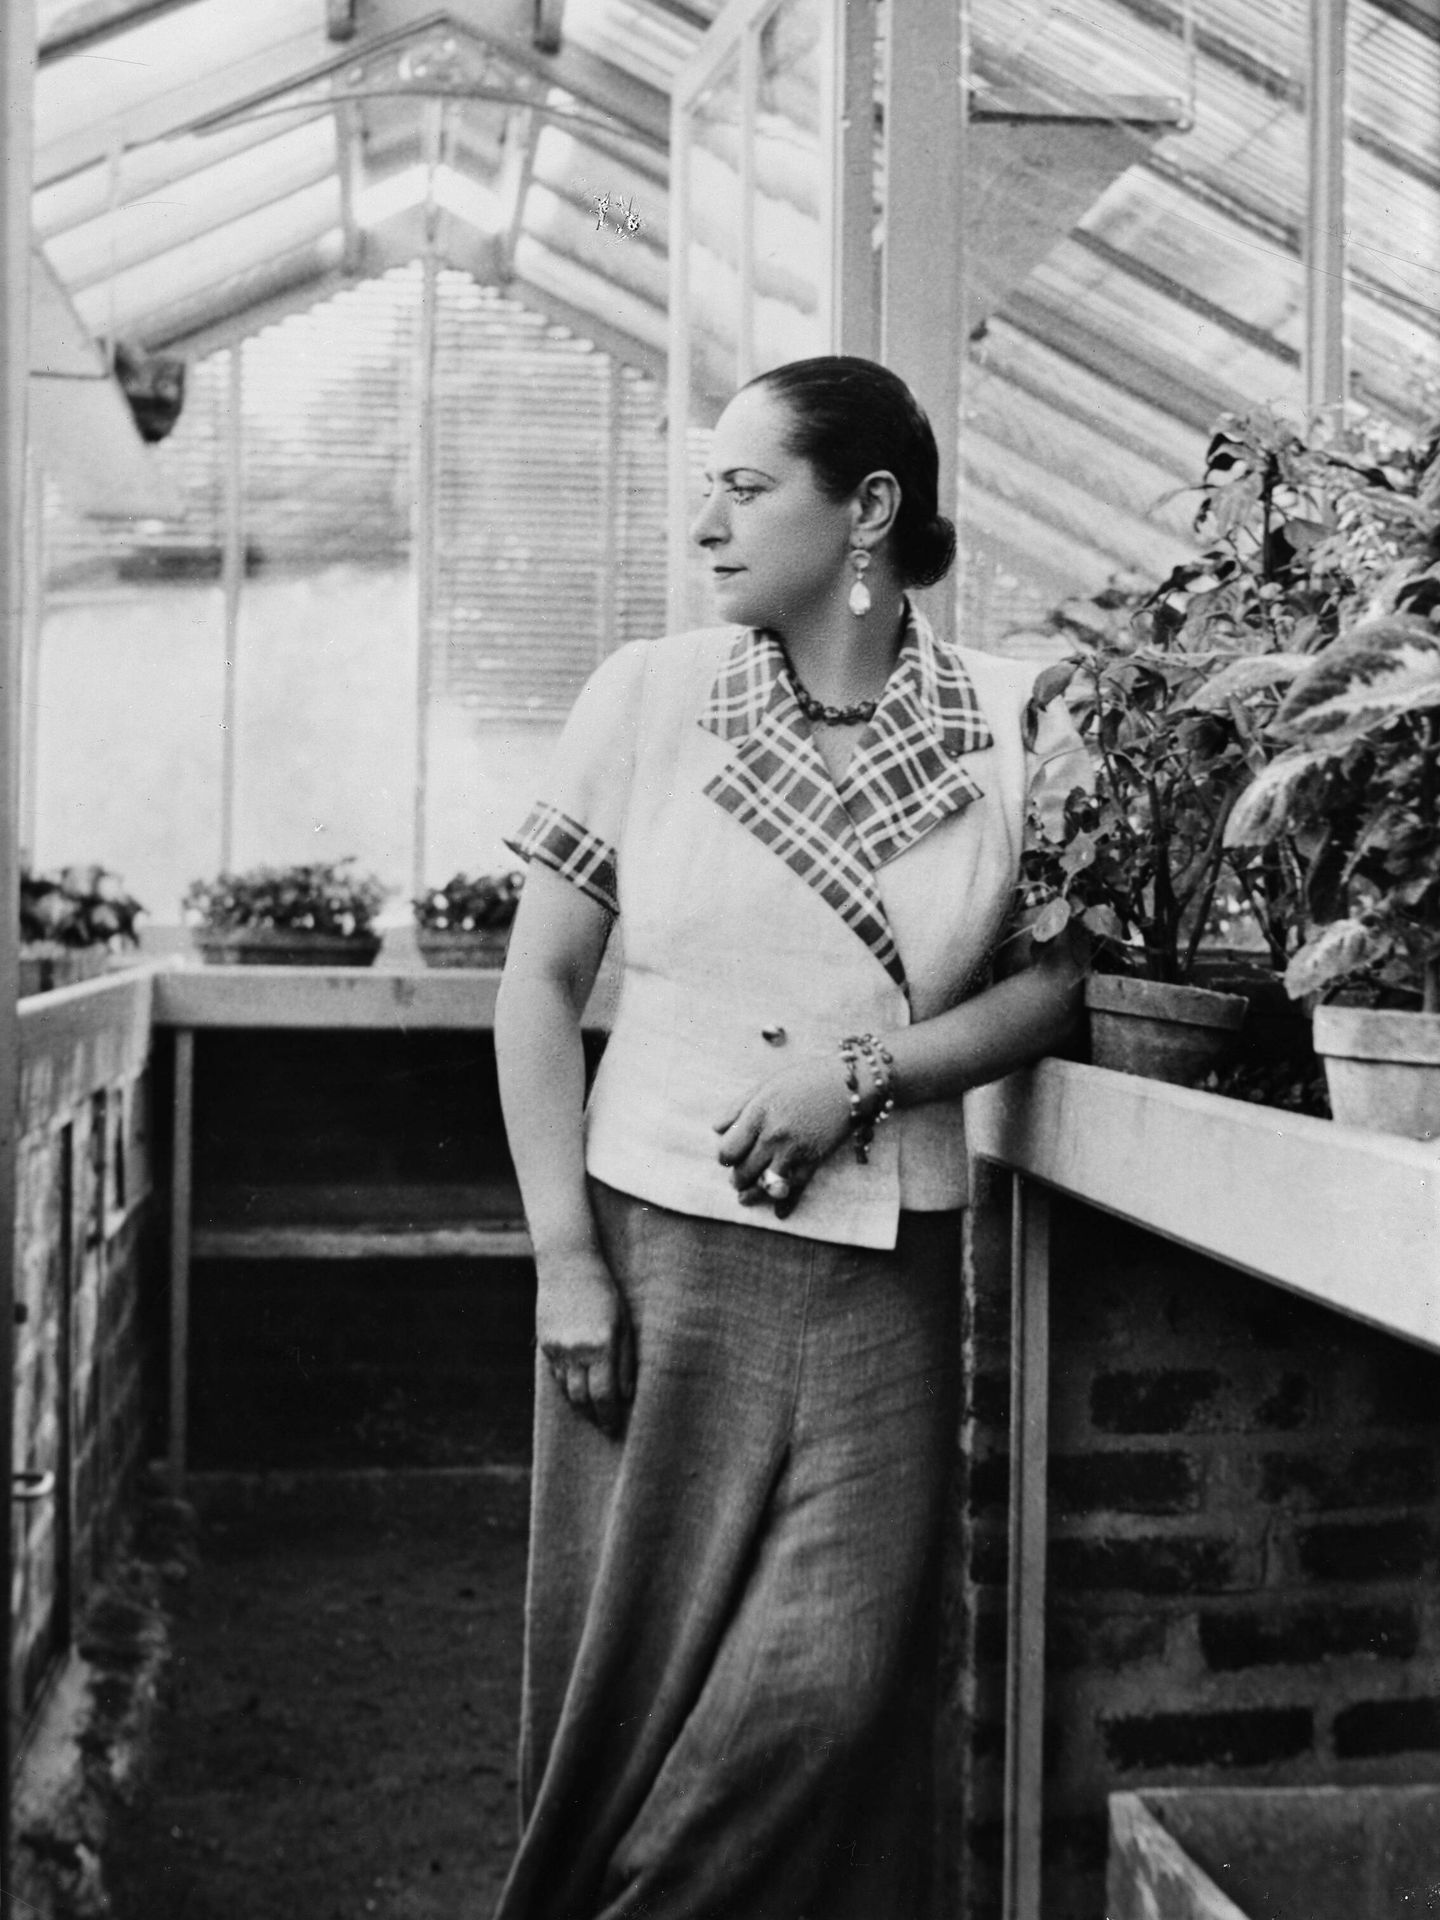 Helena Rubinstein, rodeada de los ingredientes botánicos de sus fórmulas cosméticas. (Cordon Press/Boris Lipnitzki/Roger Viollet)